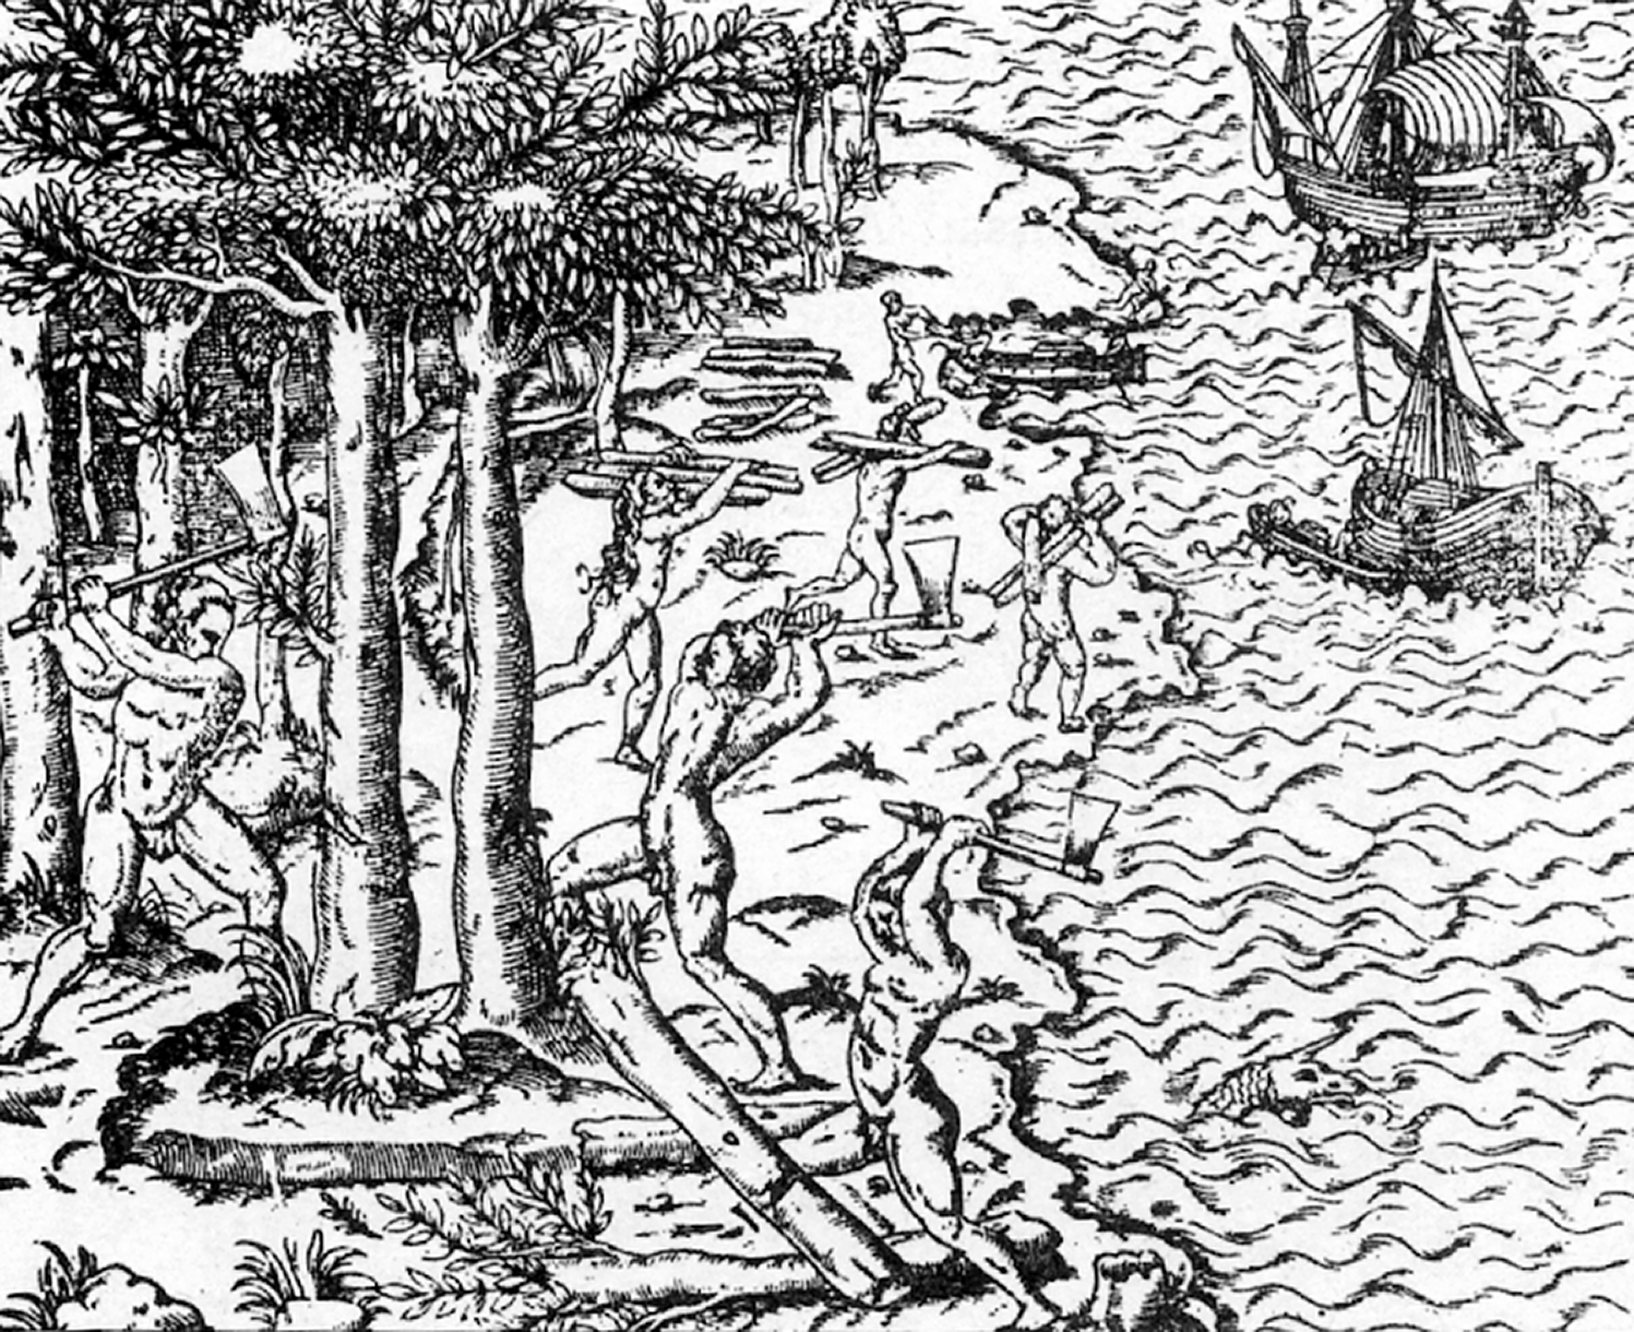 Xilogravura em preto e branco. Uma praia repleta de árvores com homens trabalhando. Eles cortam e carregam os troncos das árvores. No mar há embarcações a velas.